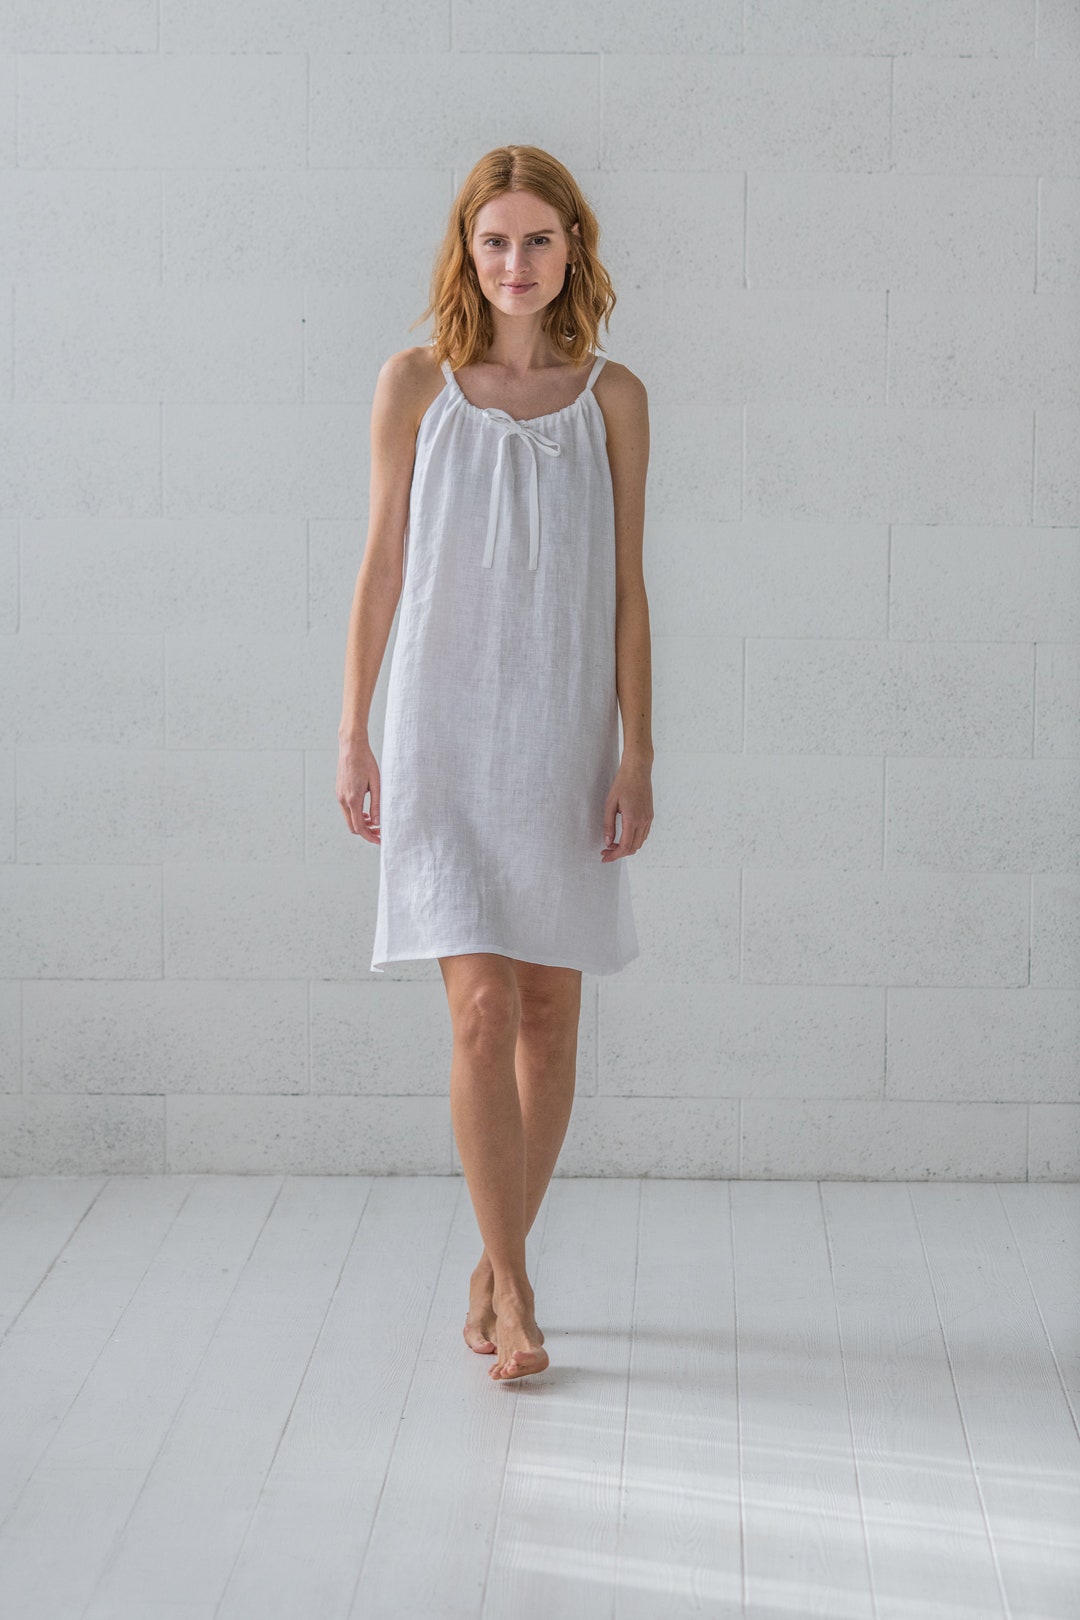 Linen Nightdress Perfect Linen Gift, Romantic Linen Nightgown, Natural ...